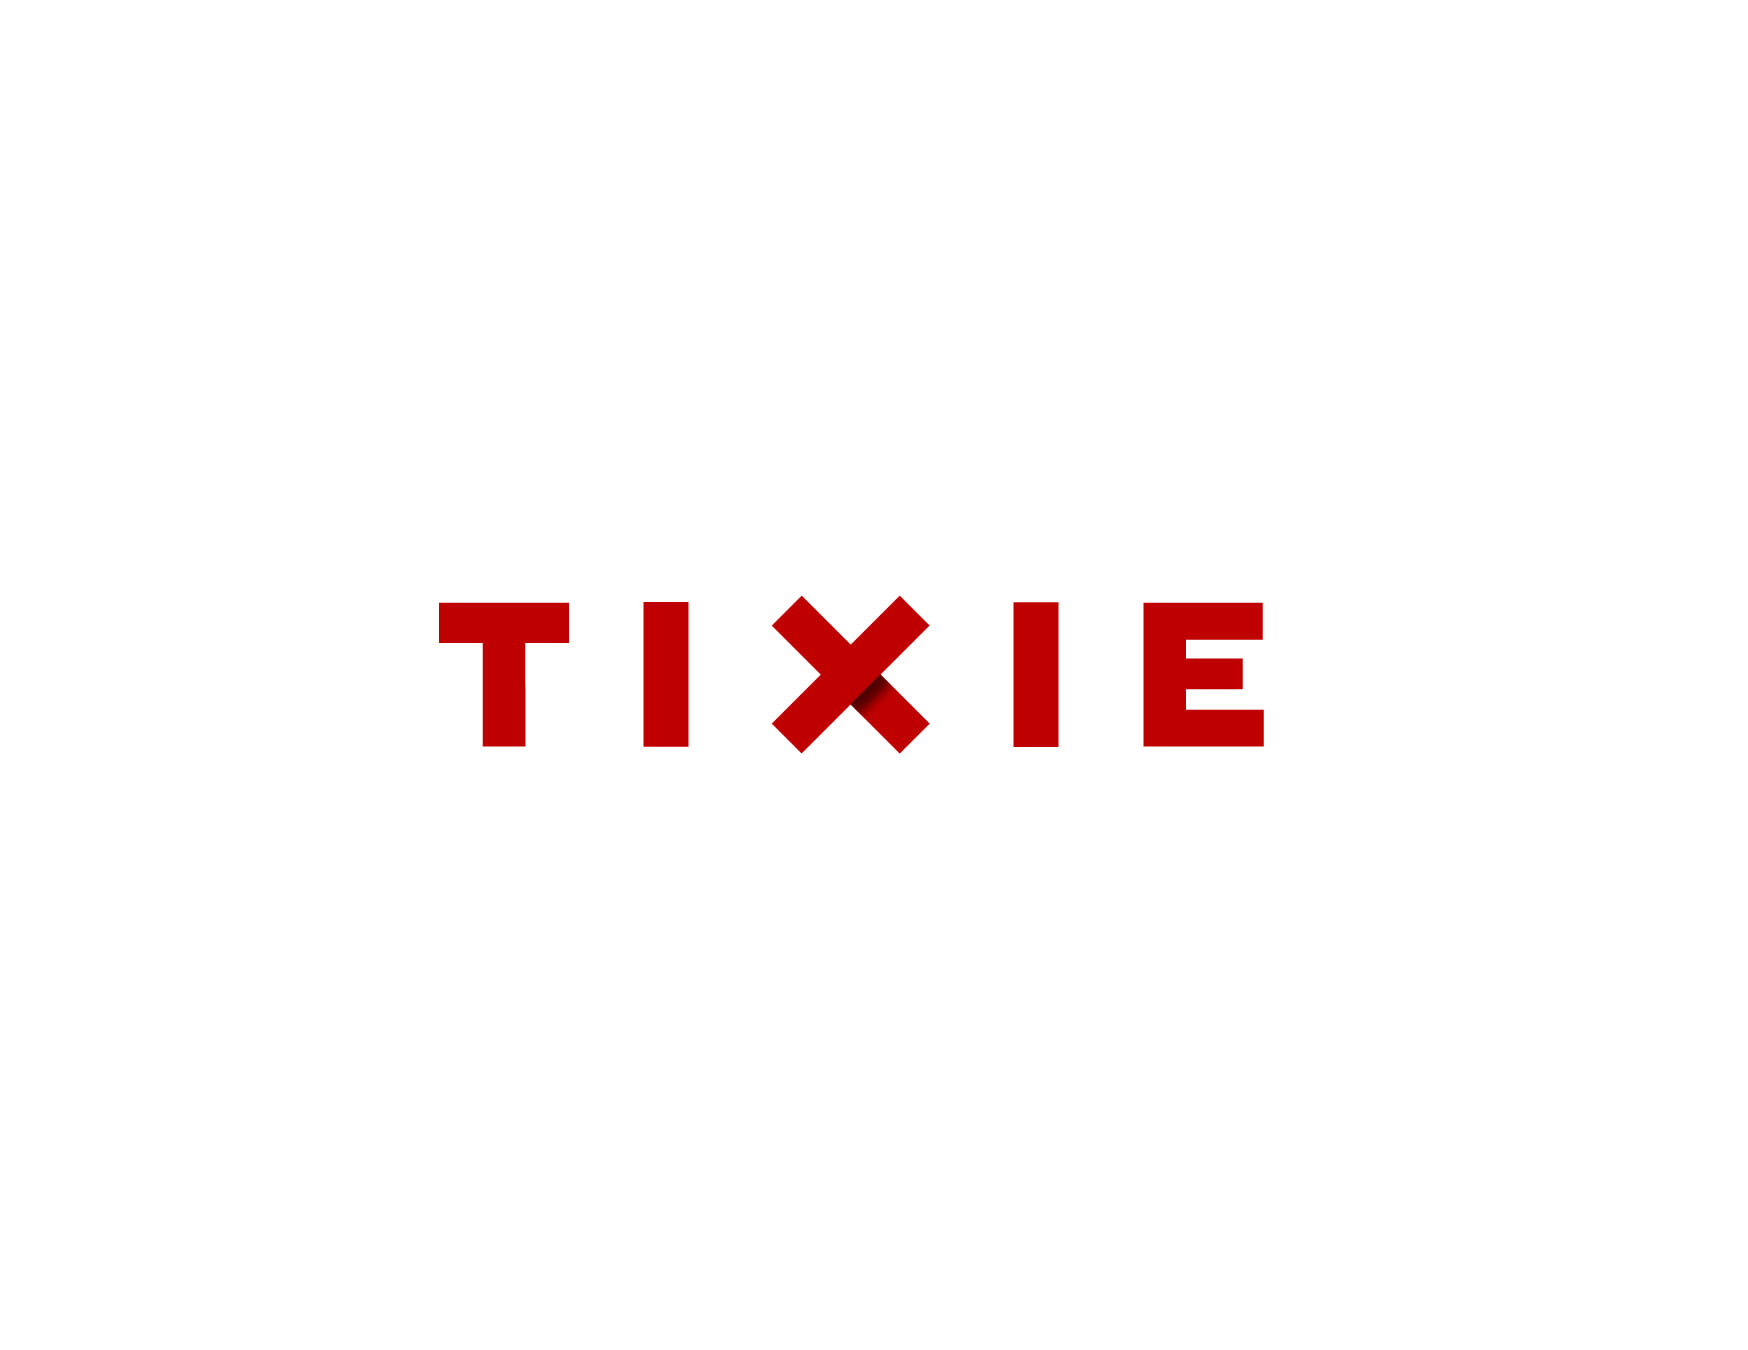 Tixie identity logotype design